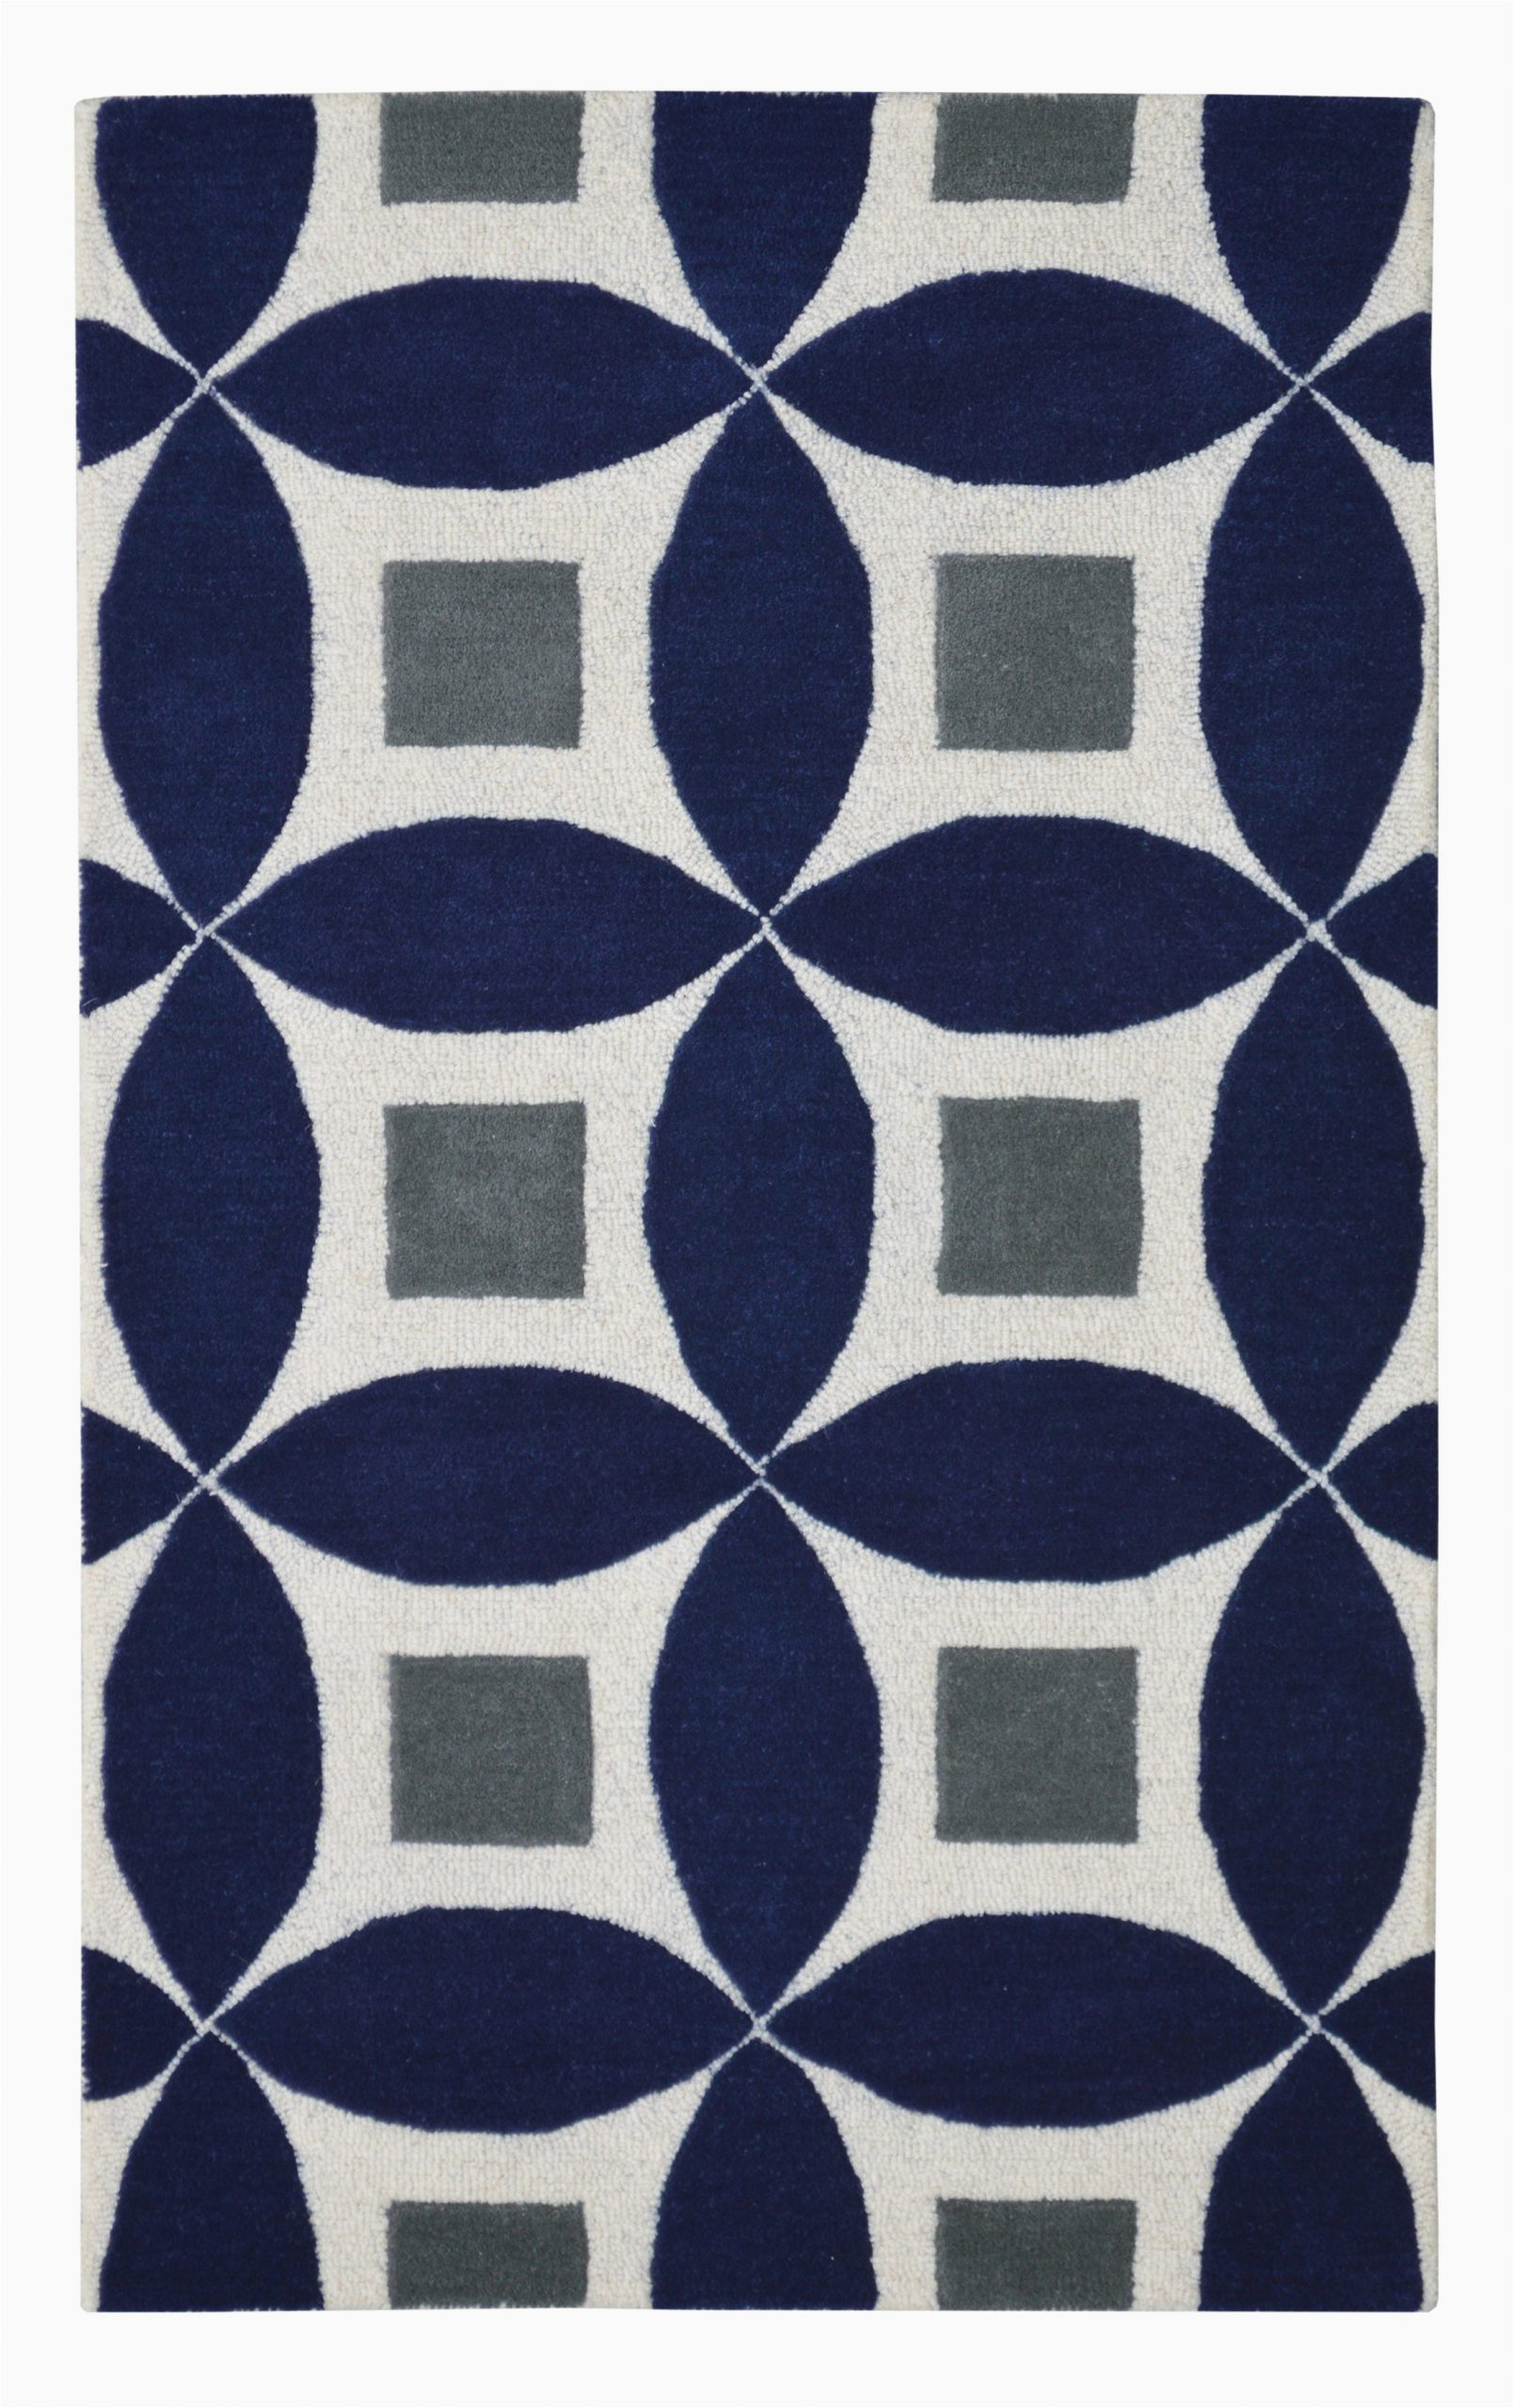 henley 2100 g navy blue modern rug 3x5